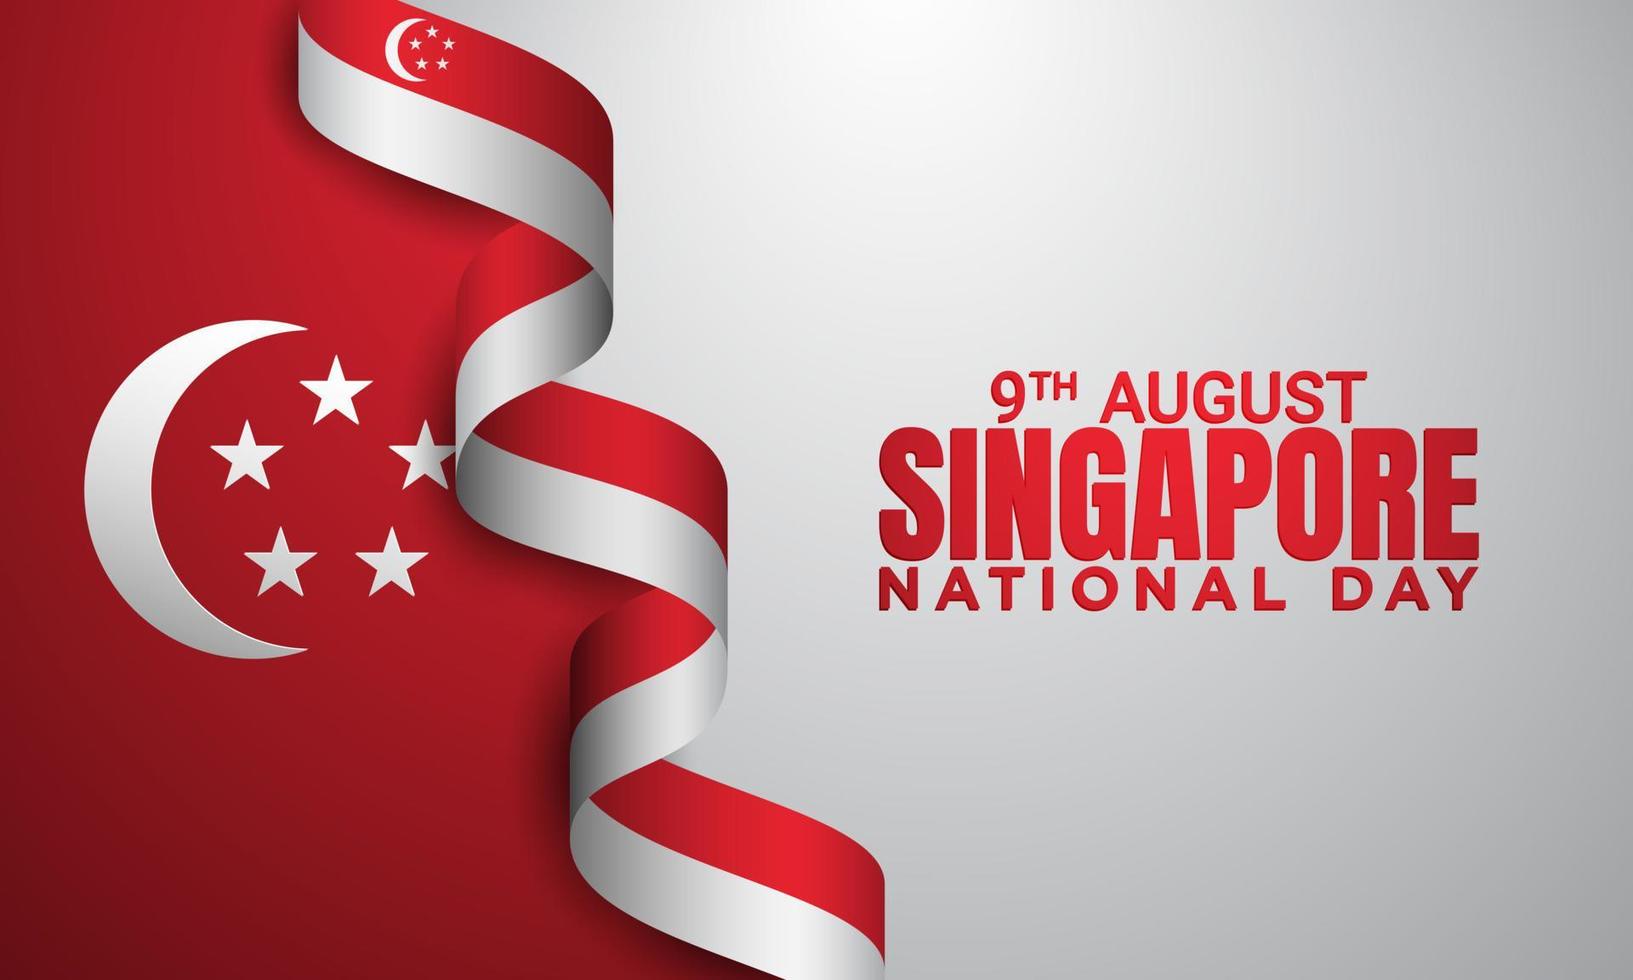 diseño de fondo del día nacional de singapur. vector